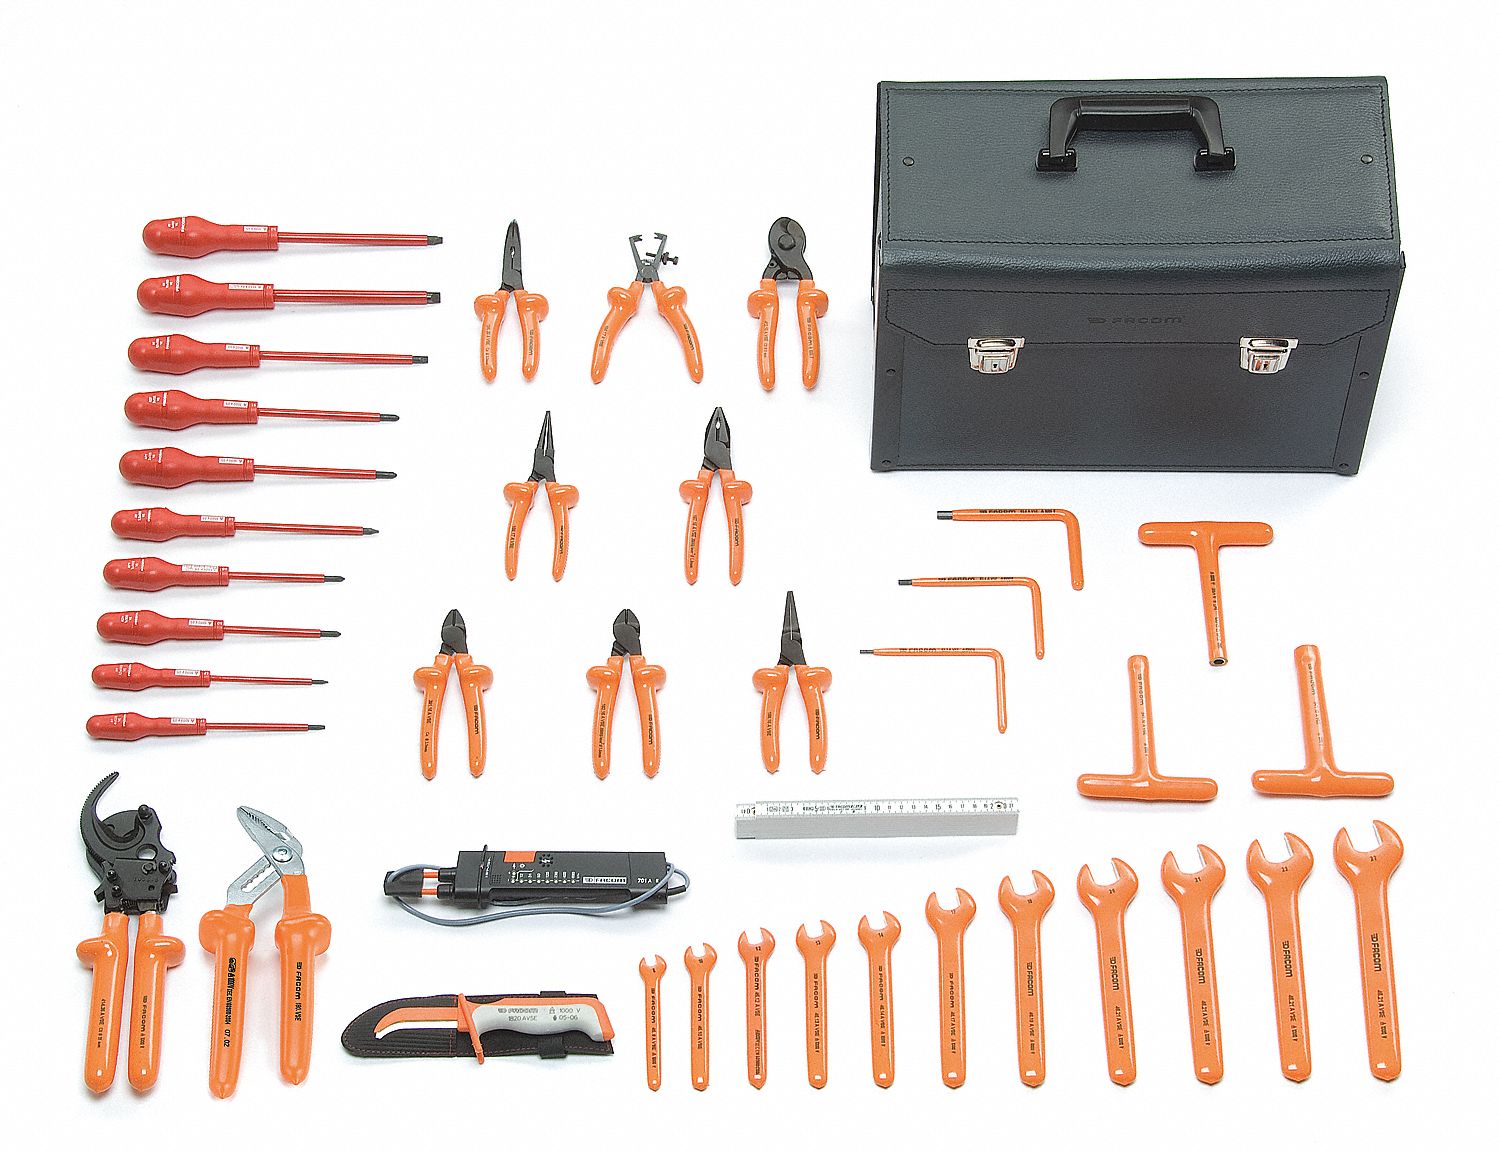 Kit de herramientas Facom de 143 piezas, para técnicos